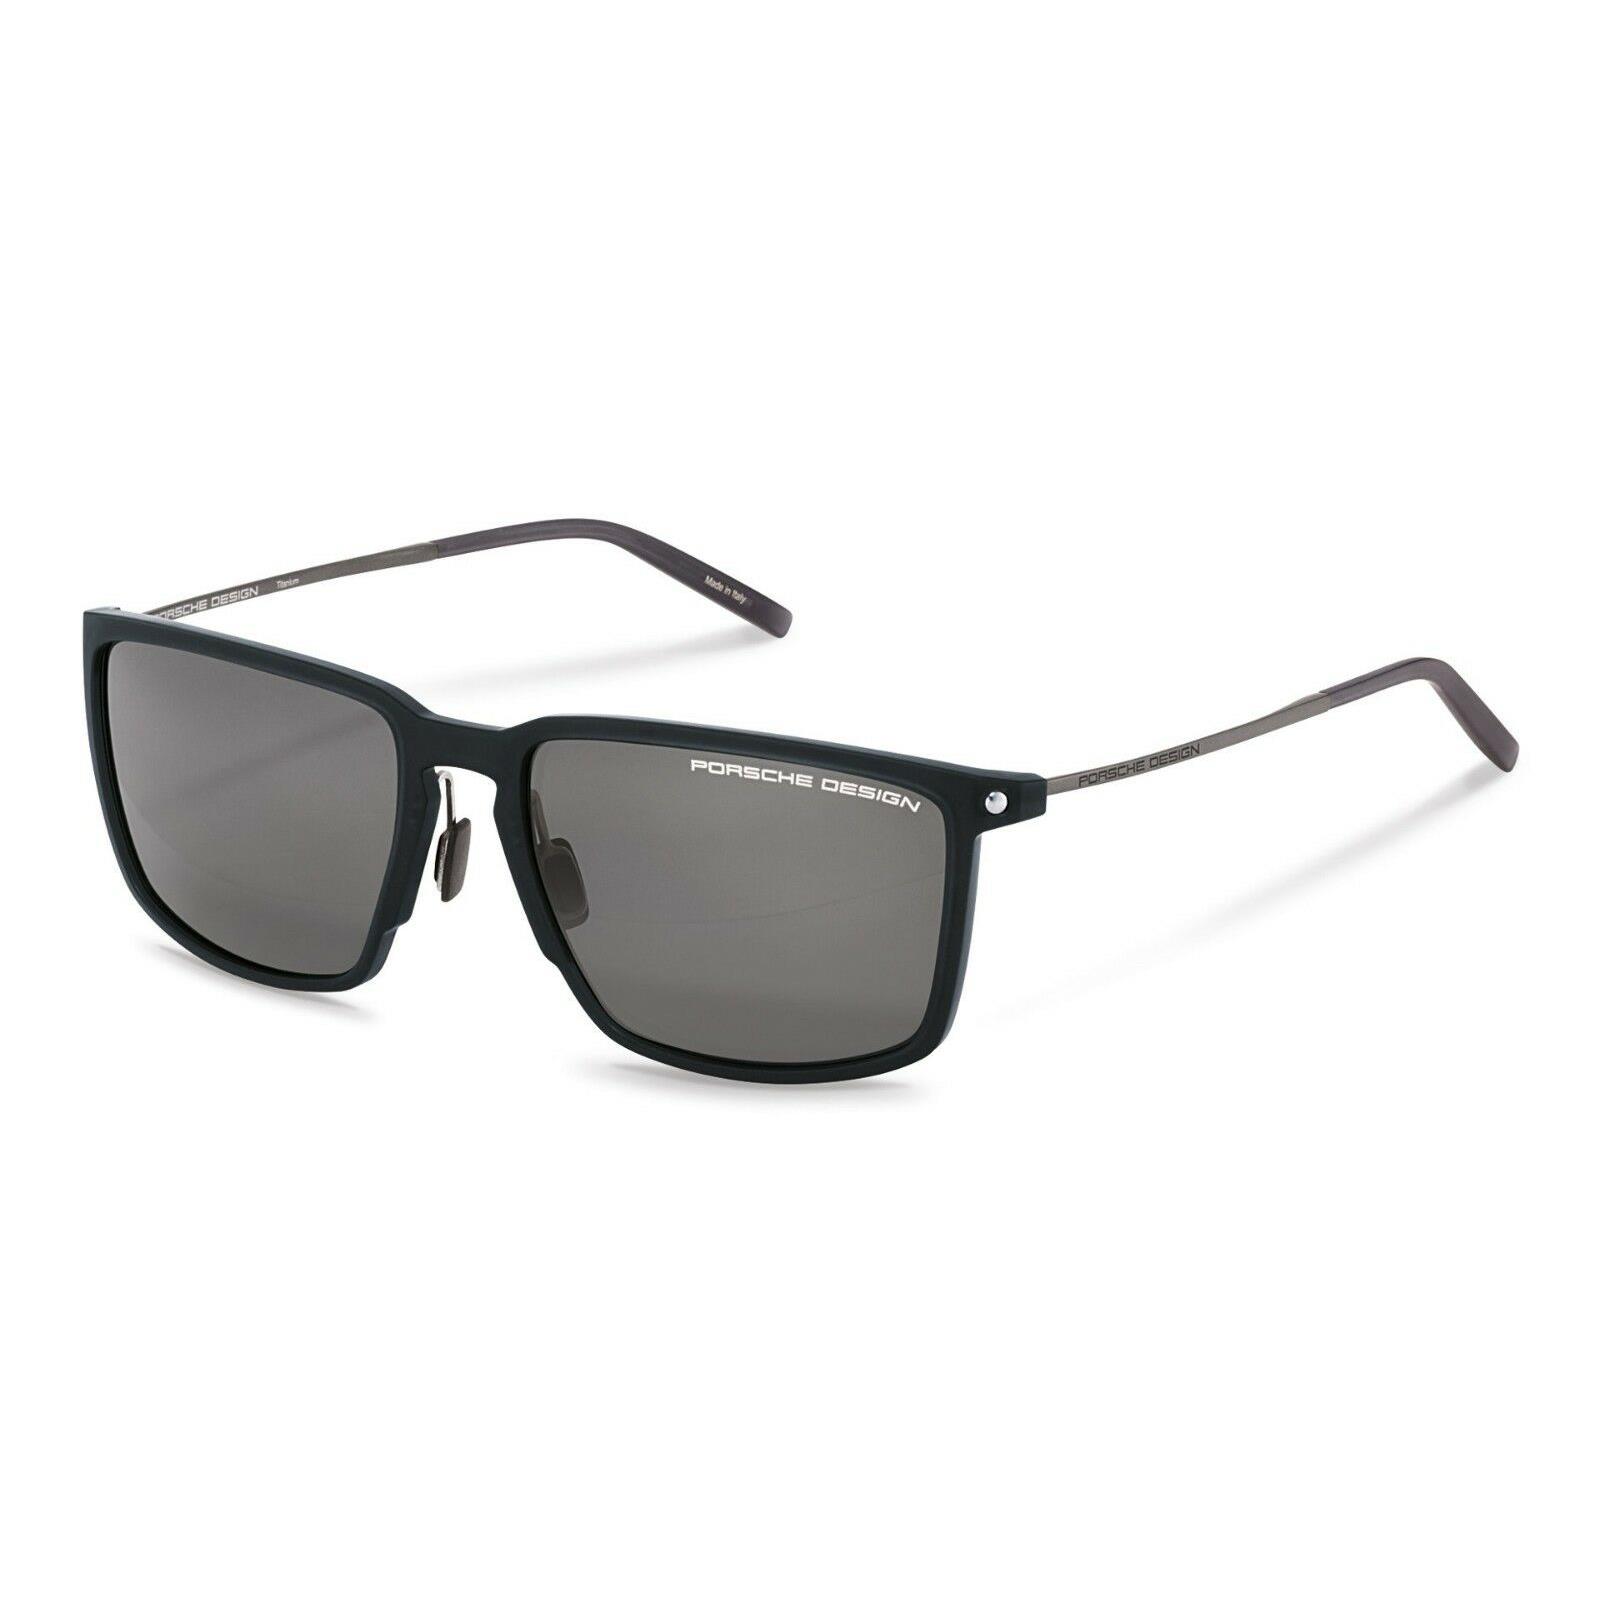 Porsche Design P 8661 A Black Polarized Sunglasses